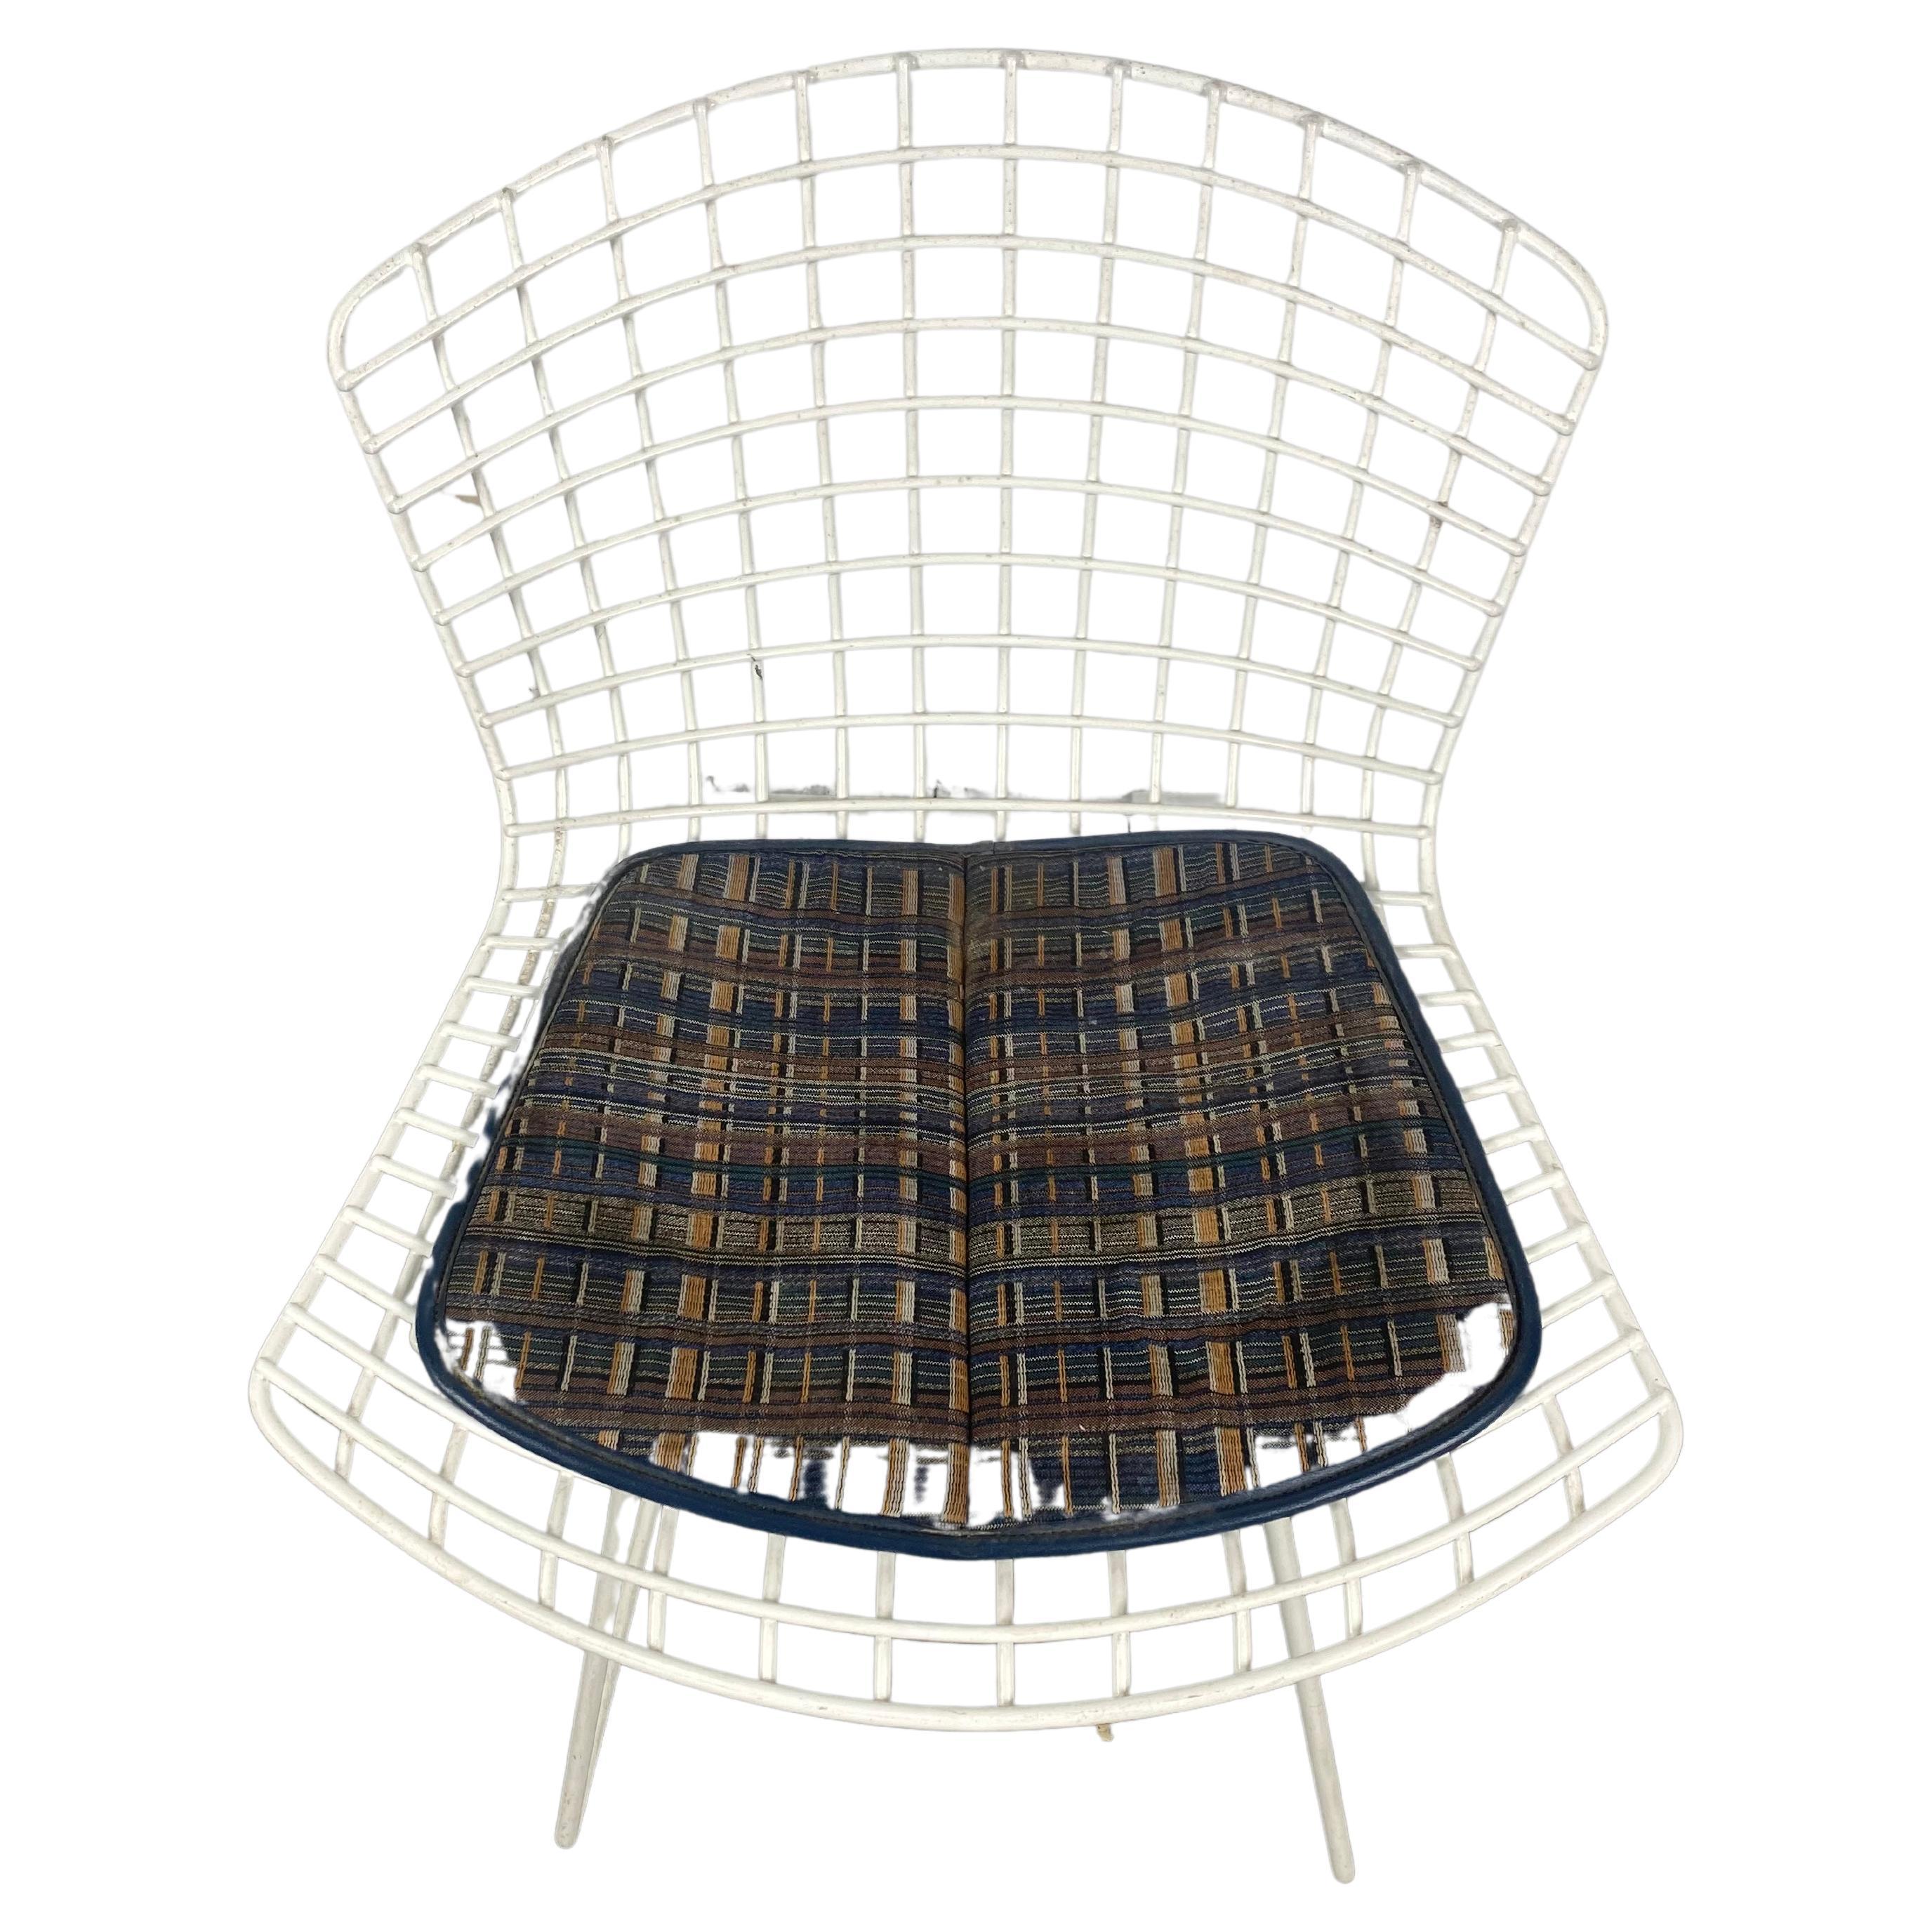 Classic Vintage Modern Industrial HARRY BERTOIA Wire side chair white 1952
Dimensions : 29.5 x 22,25 P x 18 W
Condition originale étonnante, coussin de siège en tissu Knoll personnalisé.